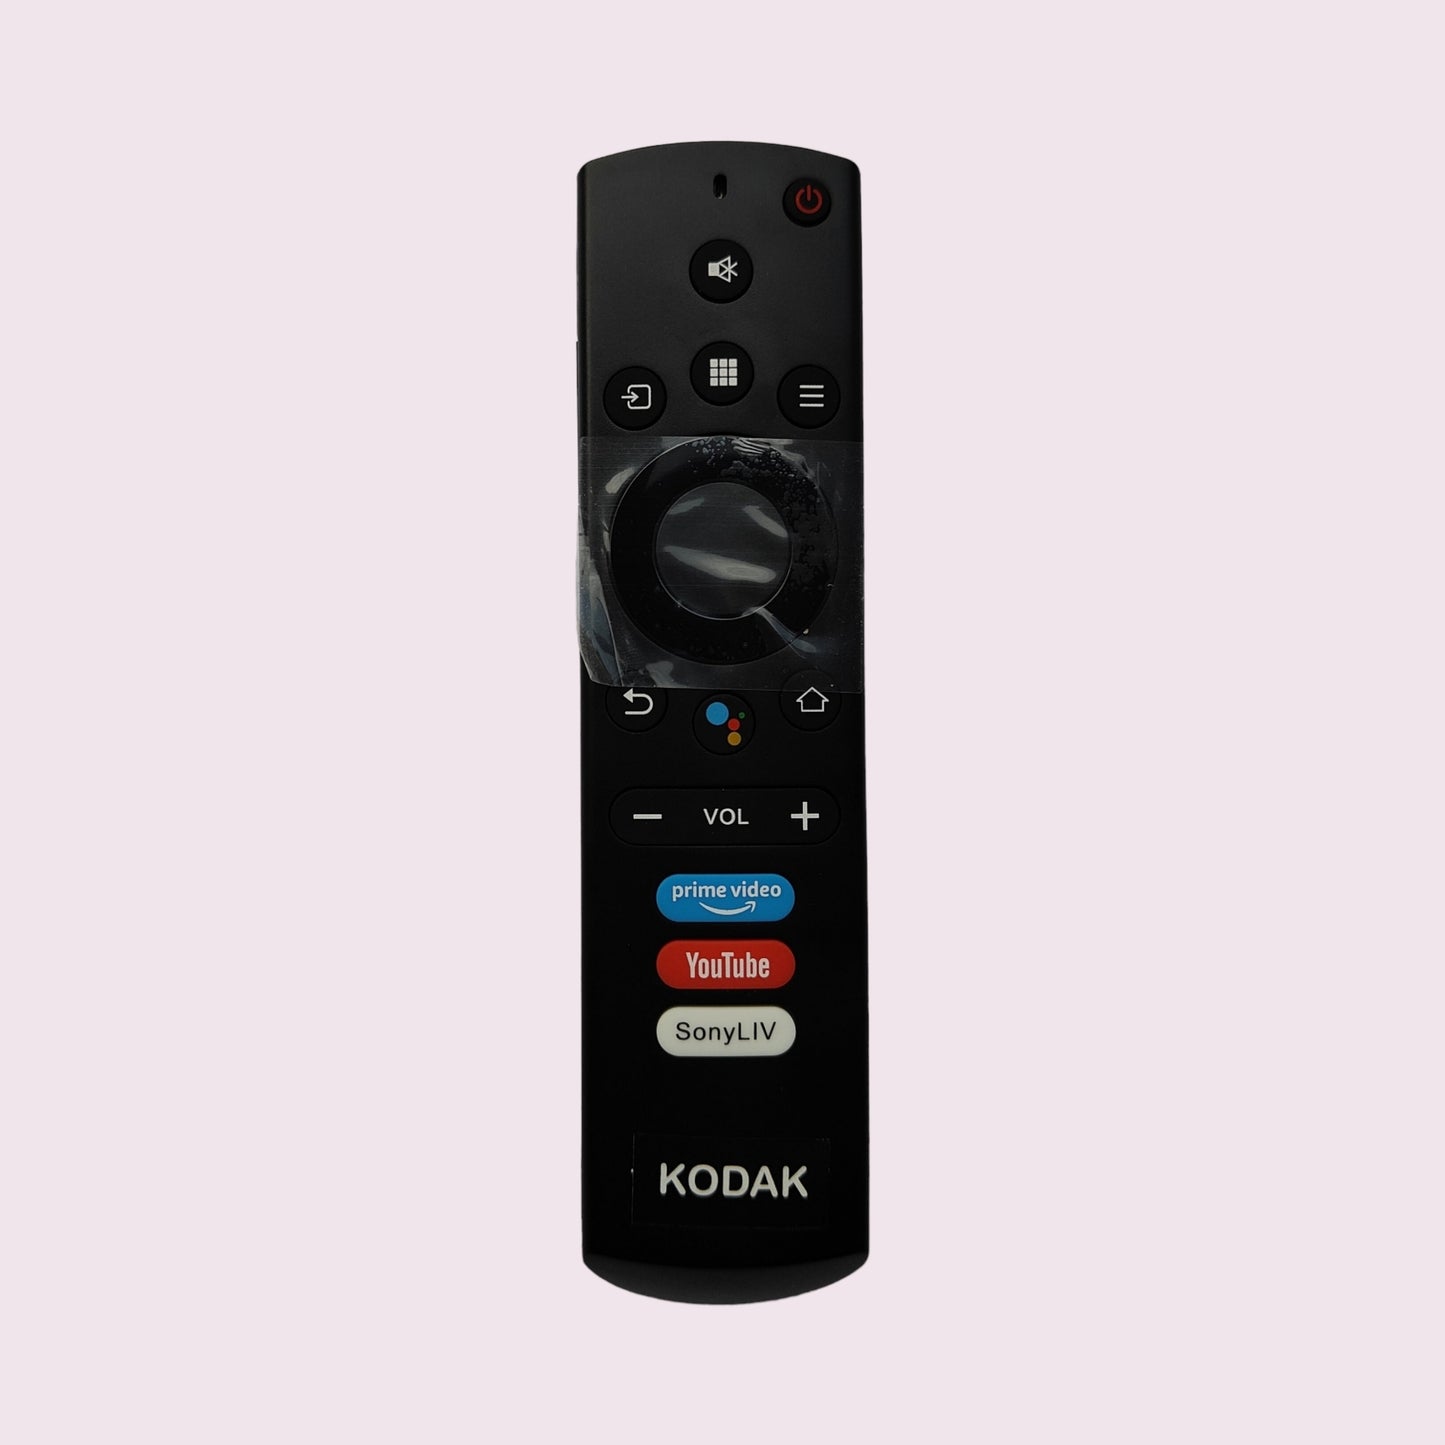 Original Kodak smart tv remote control  with voice ,Youtube,prime video,sony liv - Faritha